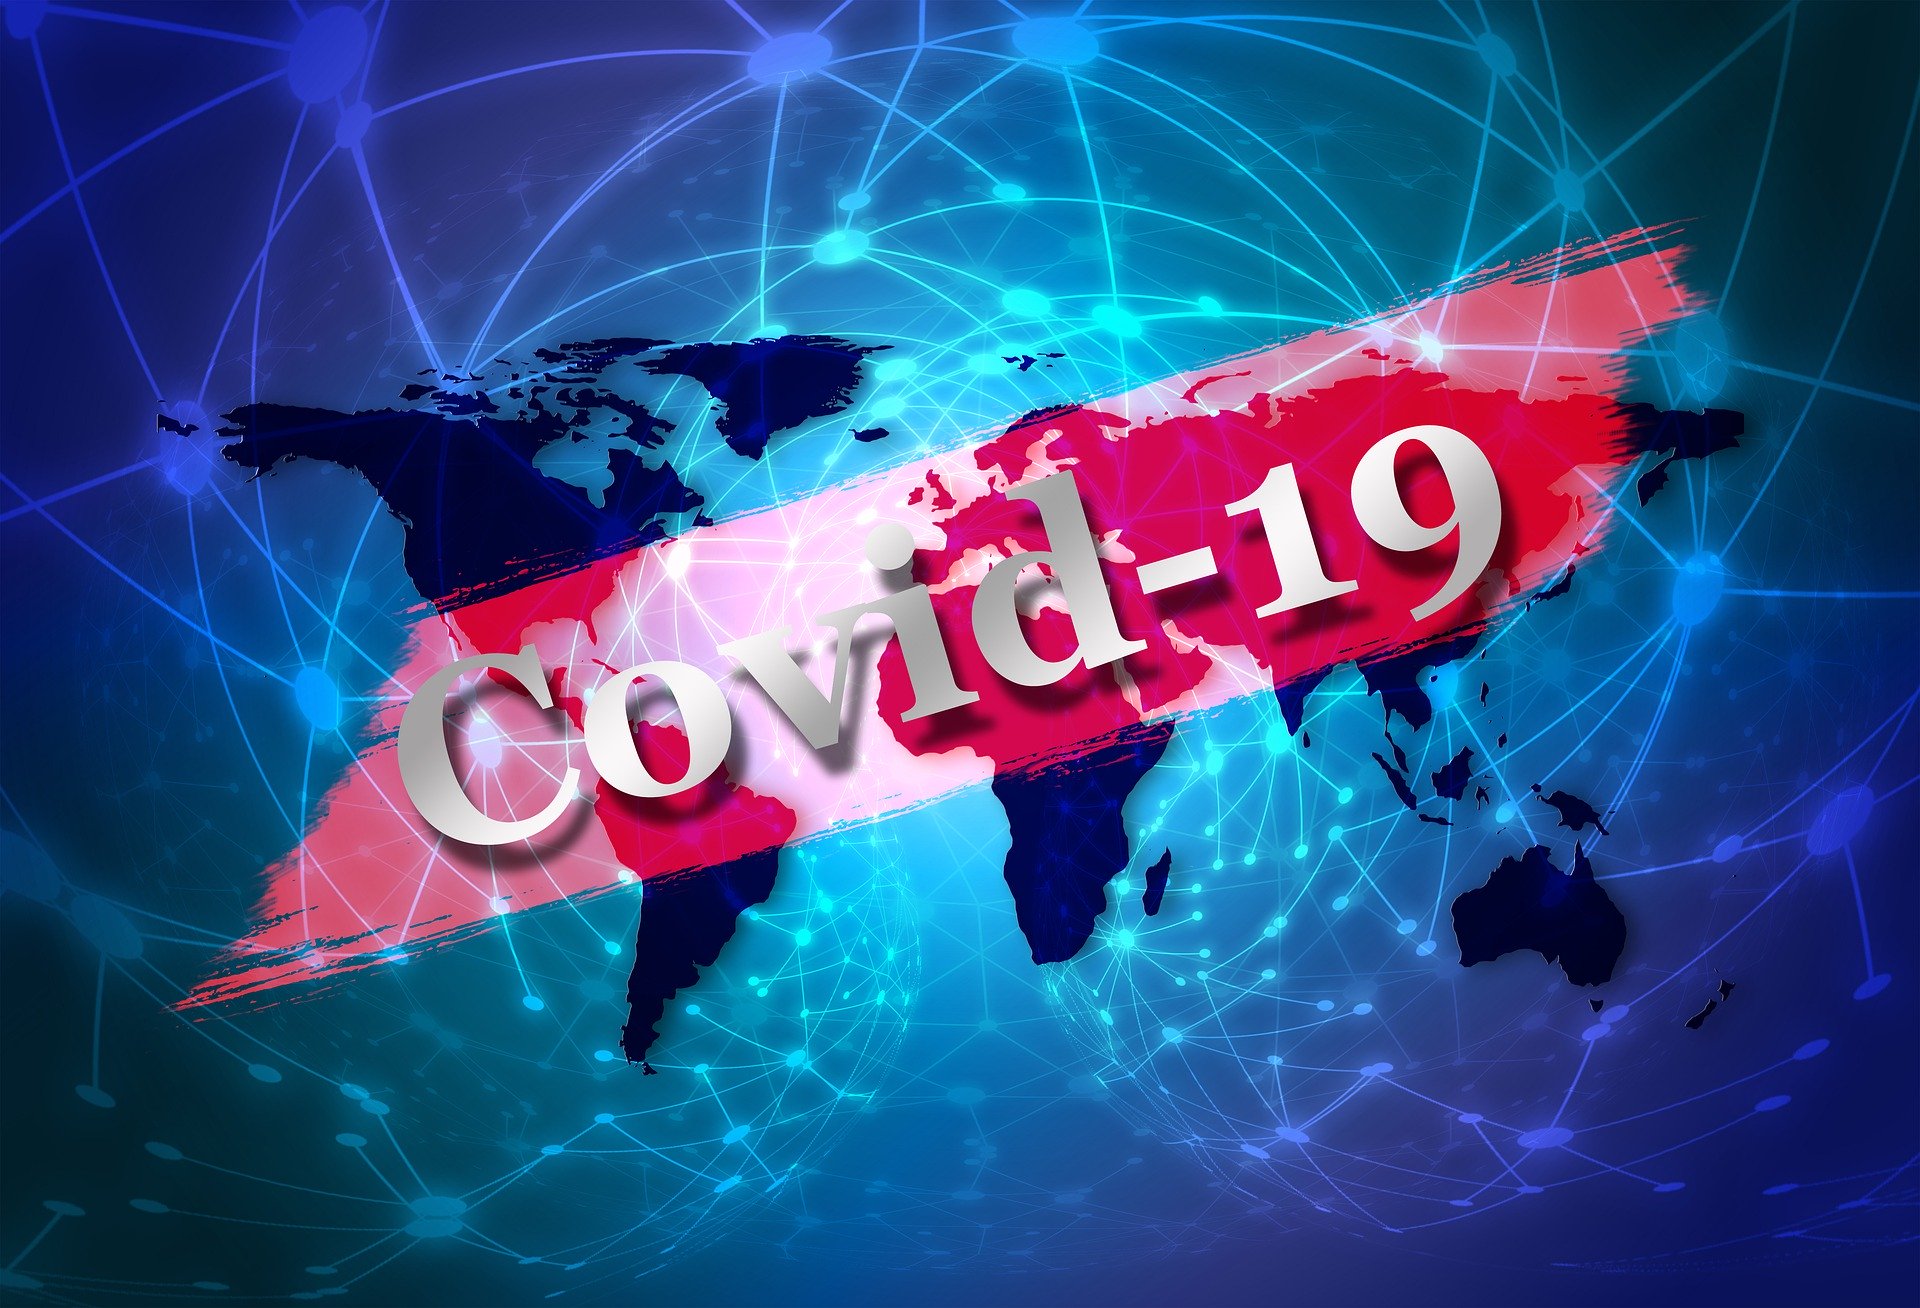 imagem em azul escuro do mapa mundi sobre fundo azul com sobreposiÃ§Ã£o de faixa vermelha com a palavra Covid-19 escrita em branco